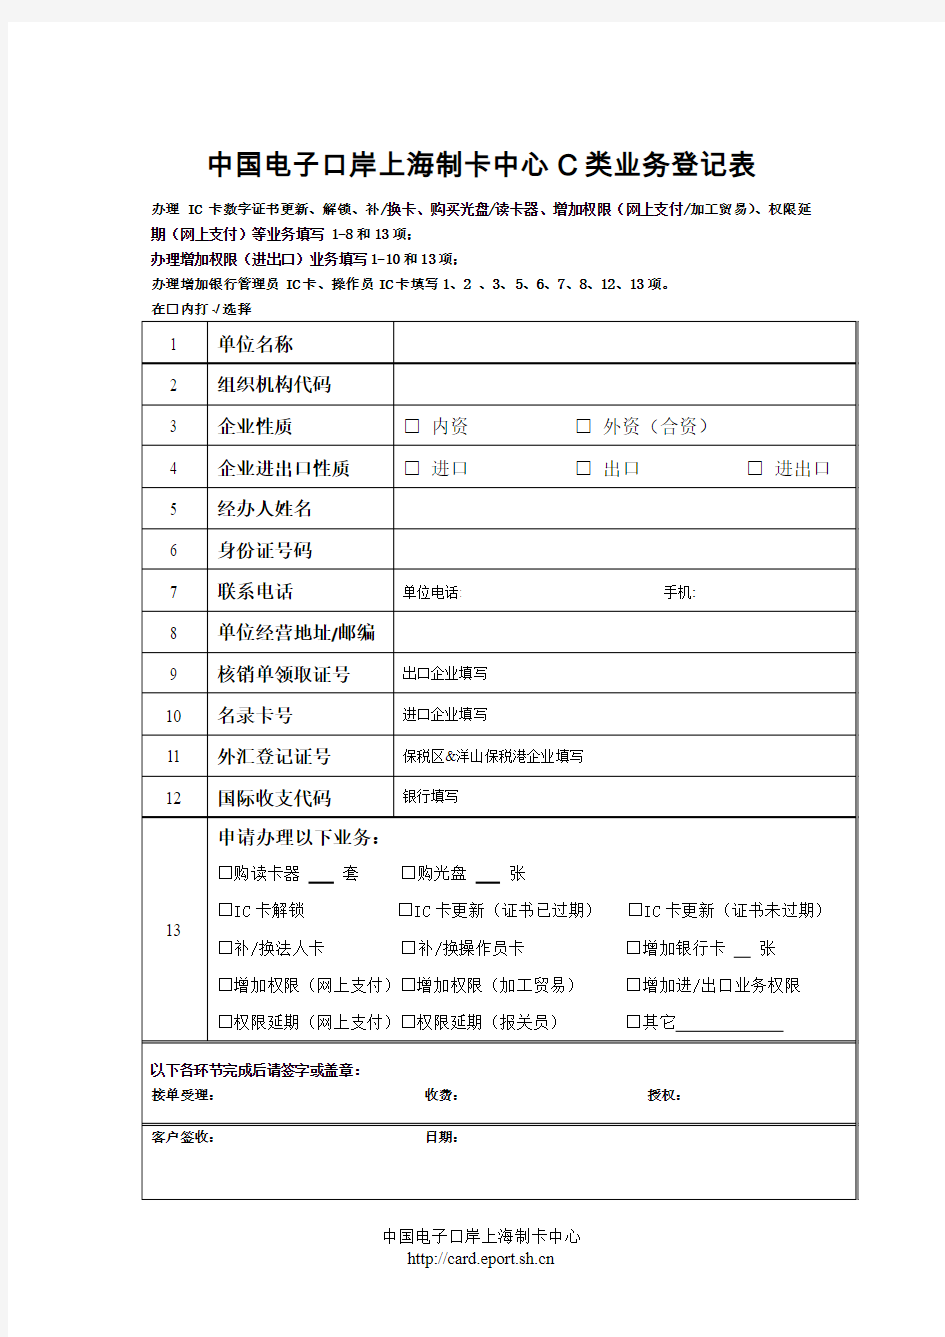 中国电子口岸上海制卡中心C类业务登记表